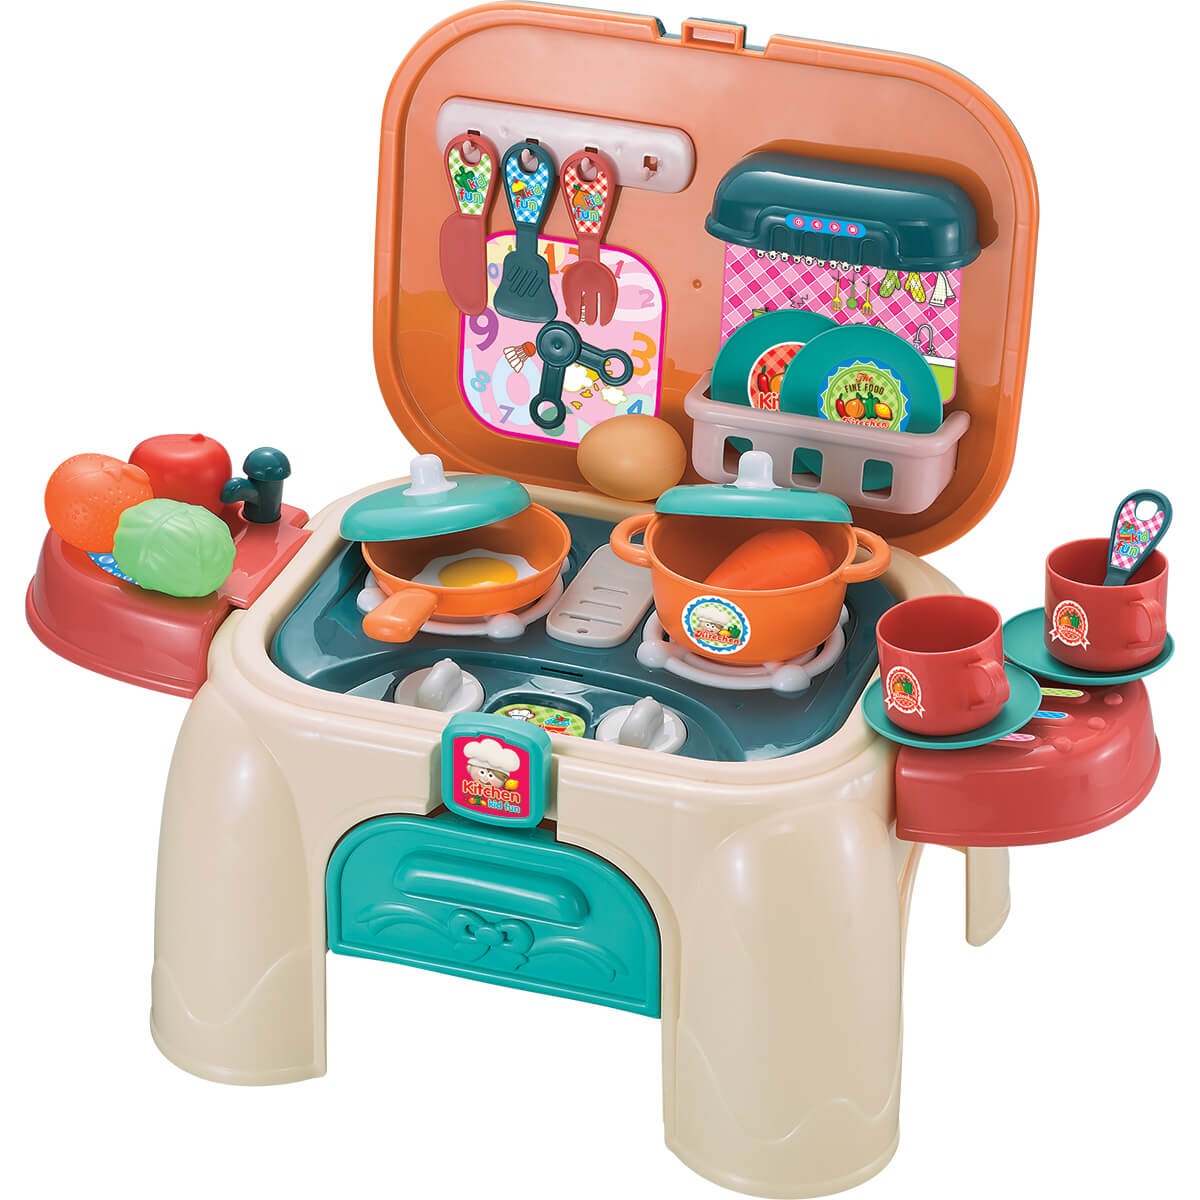 Maleta de viaje 2 en 1 para niños, es una maleta y una cocina de juguete |  Incluye ollas de juguete, sartenes, platos, utensilios y alimentos de